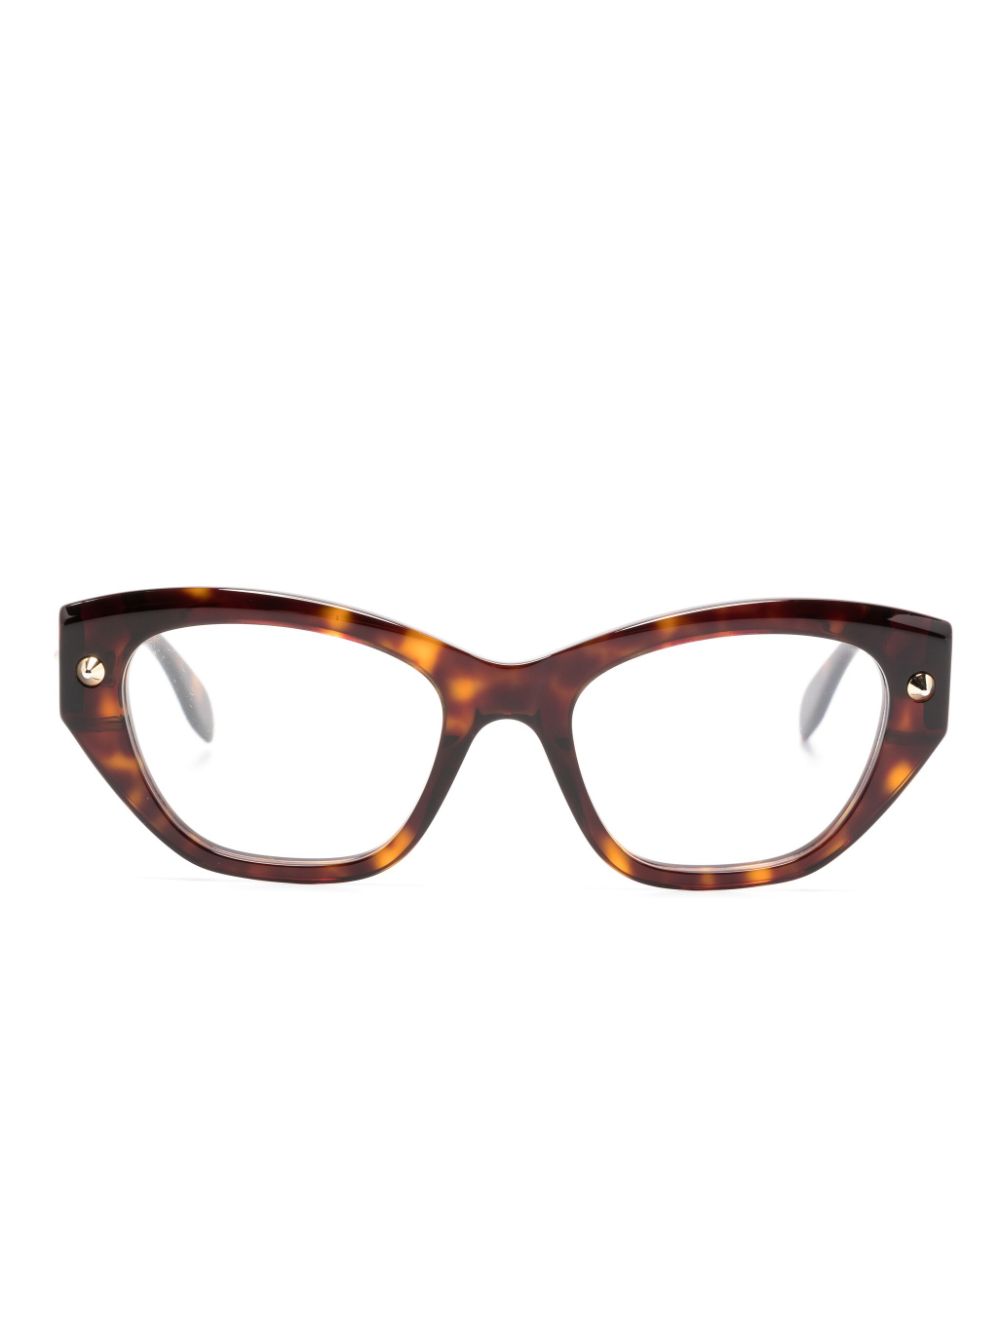 Image 1 of Alexander McQueen Eyewear tortoiseshell cat-eye frame glasses